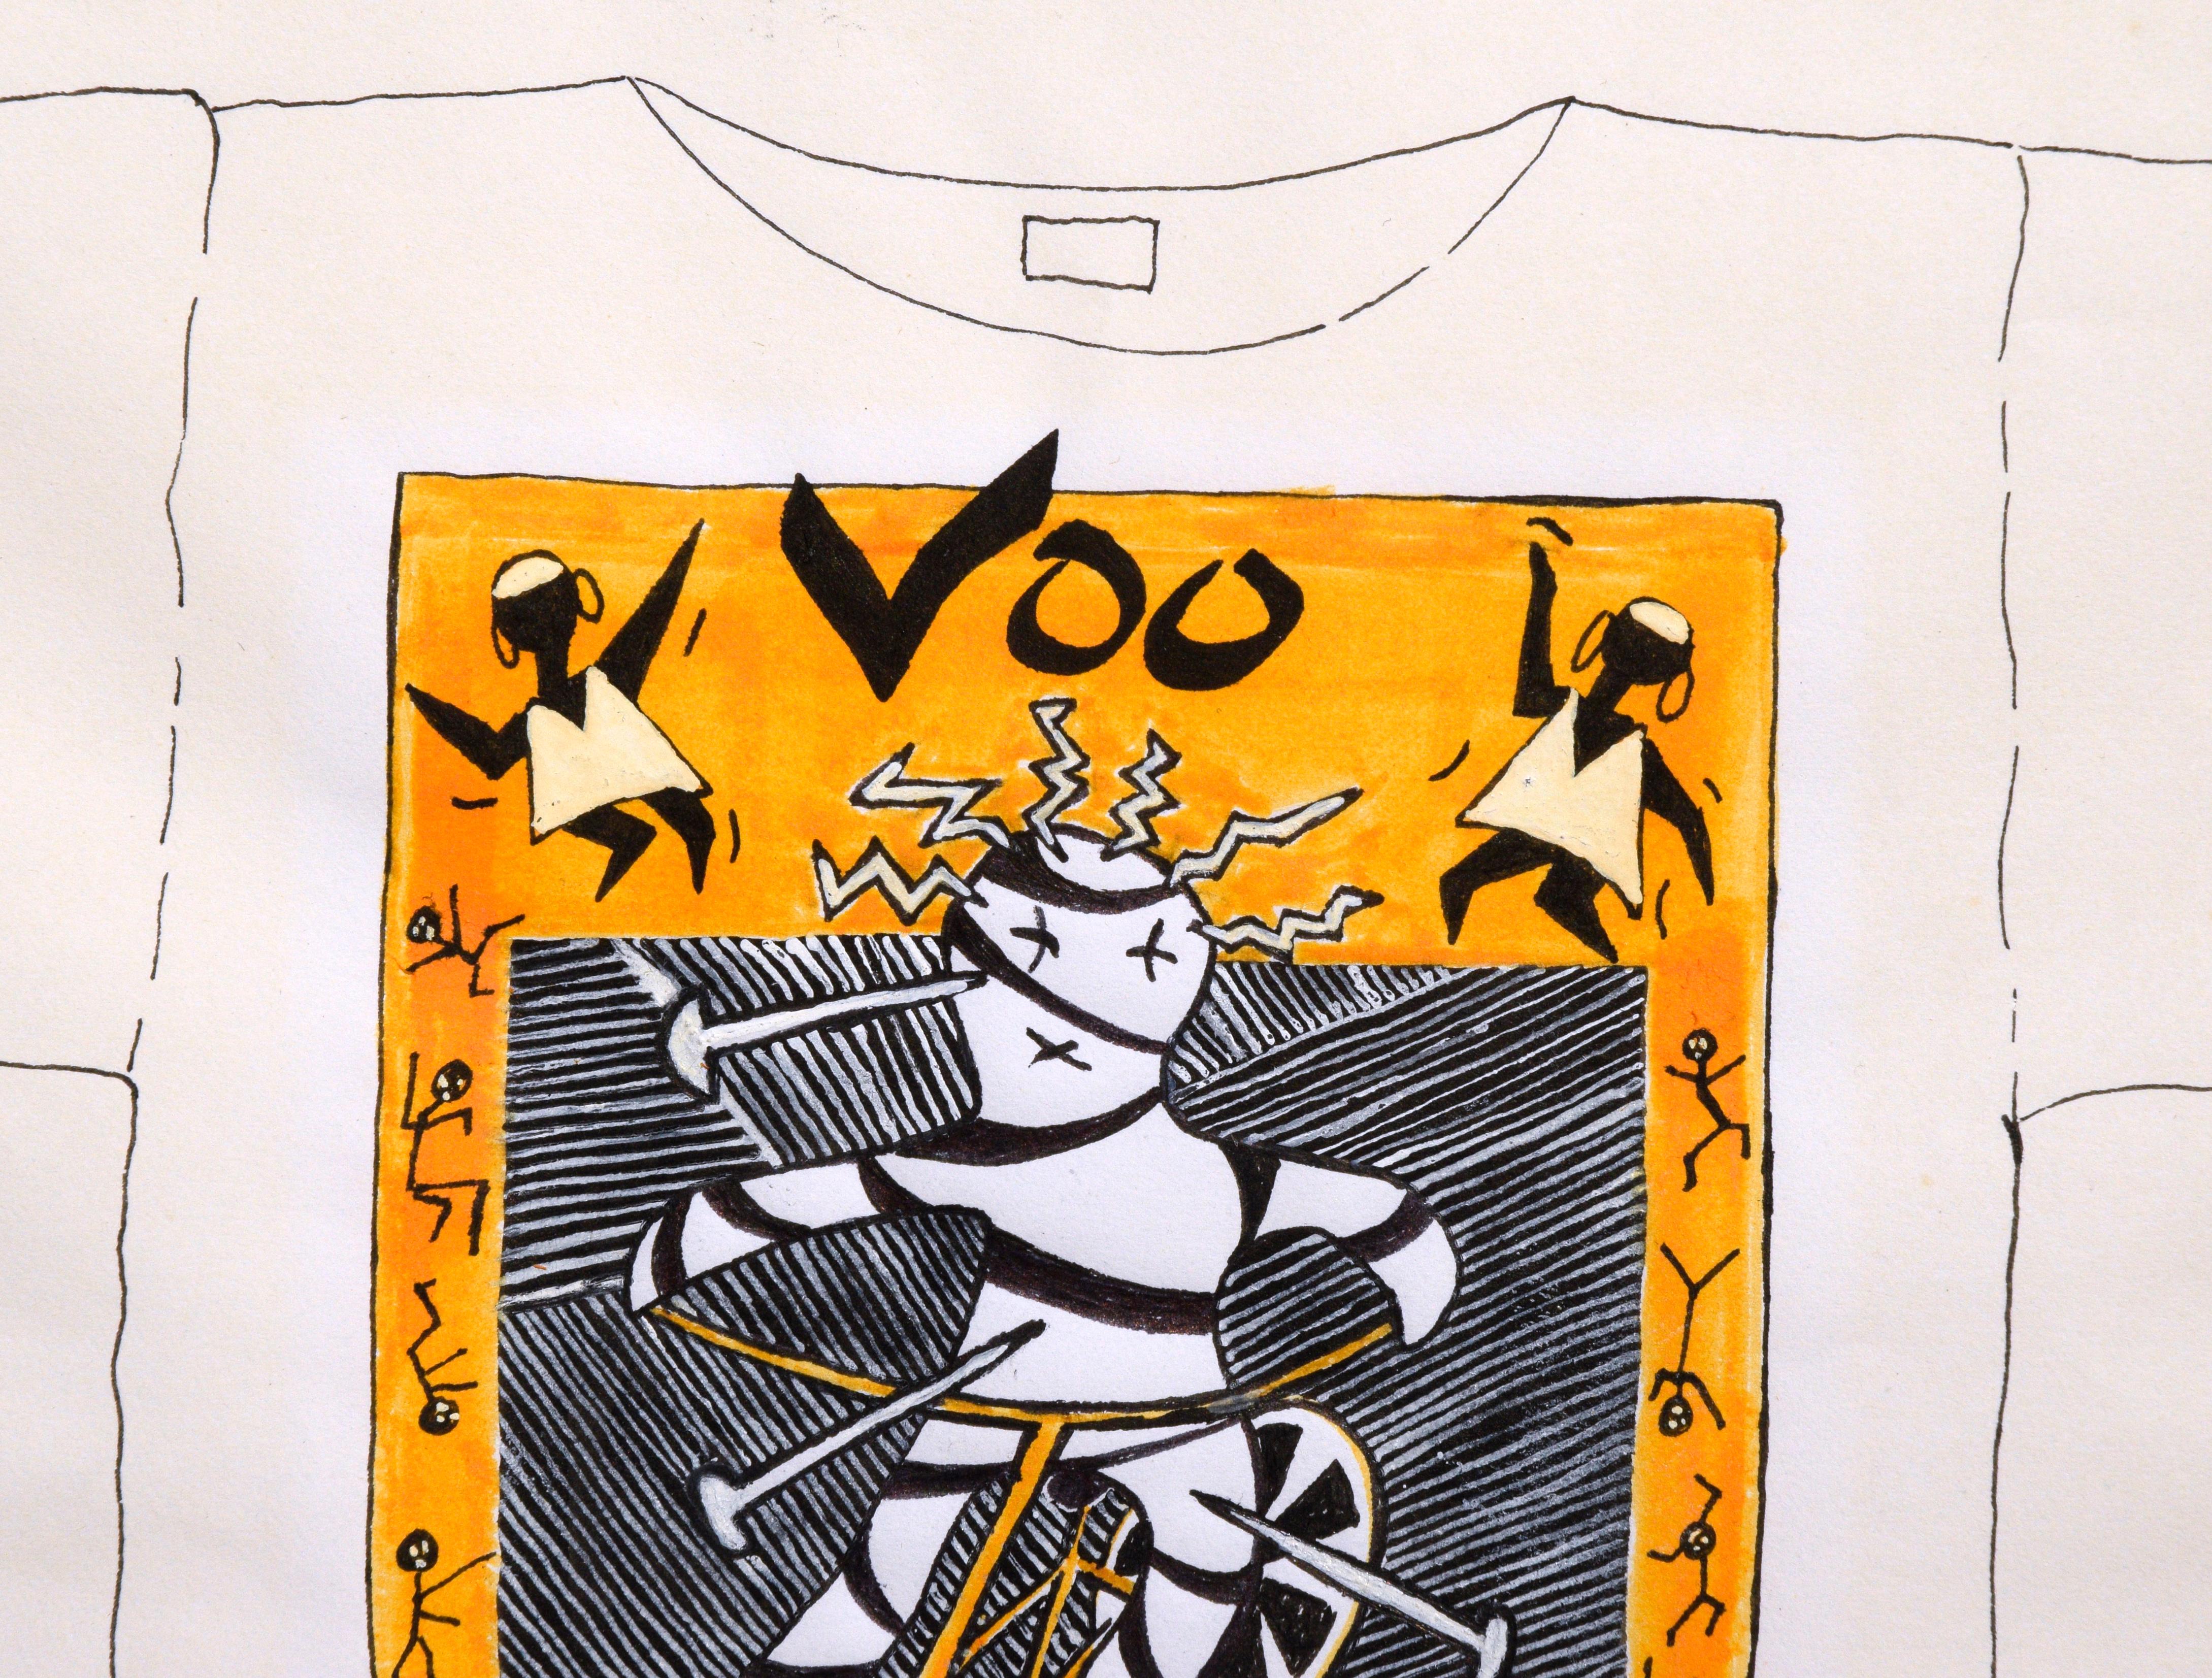 Original Voodoo Rider Original 1980er T-Shirt Design Zeichnung  (Streetart), Painting, von Gary Ermoloff